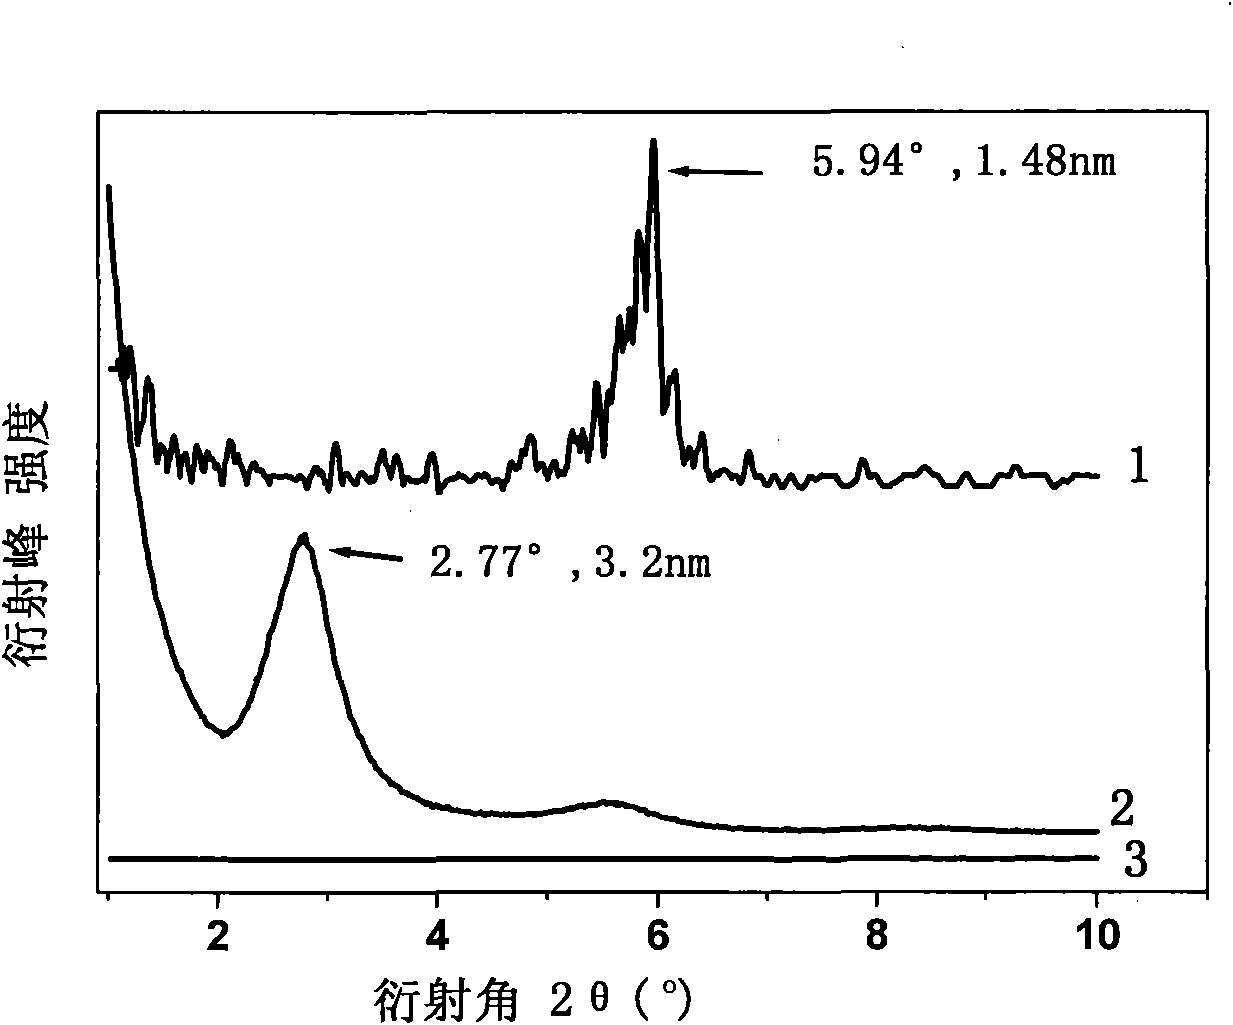 Methods for preparing quaternary phosphonium salt ionic liquid pillaring-modified montmorillonite and polymer/montmorillonite nanocomposite